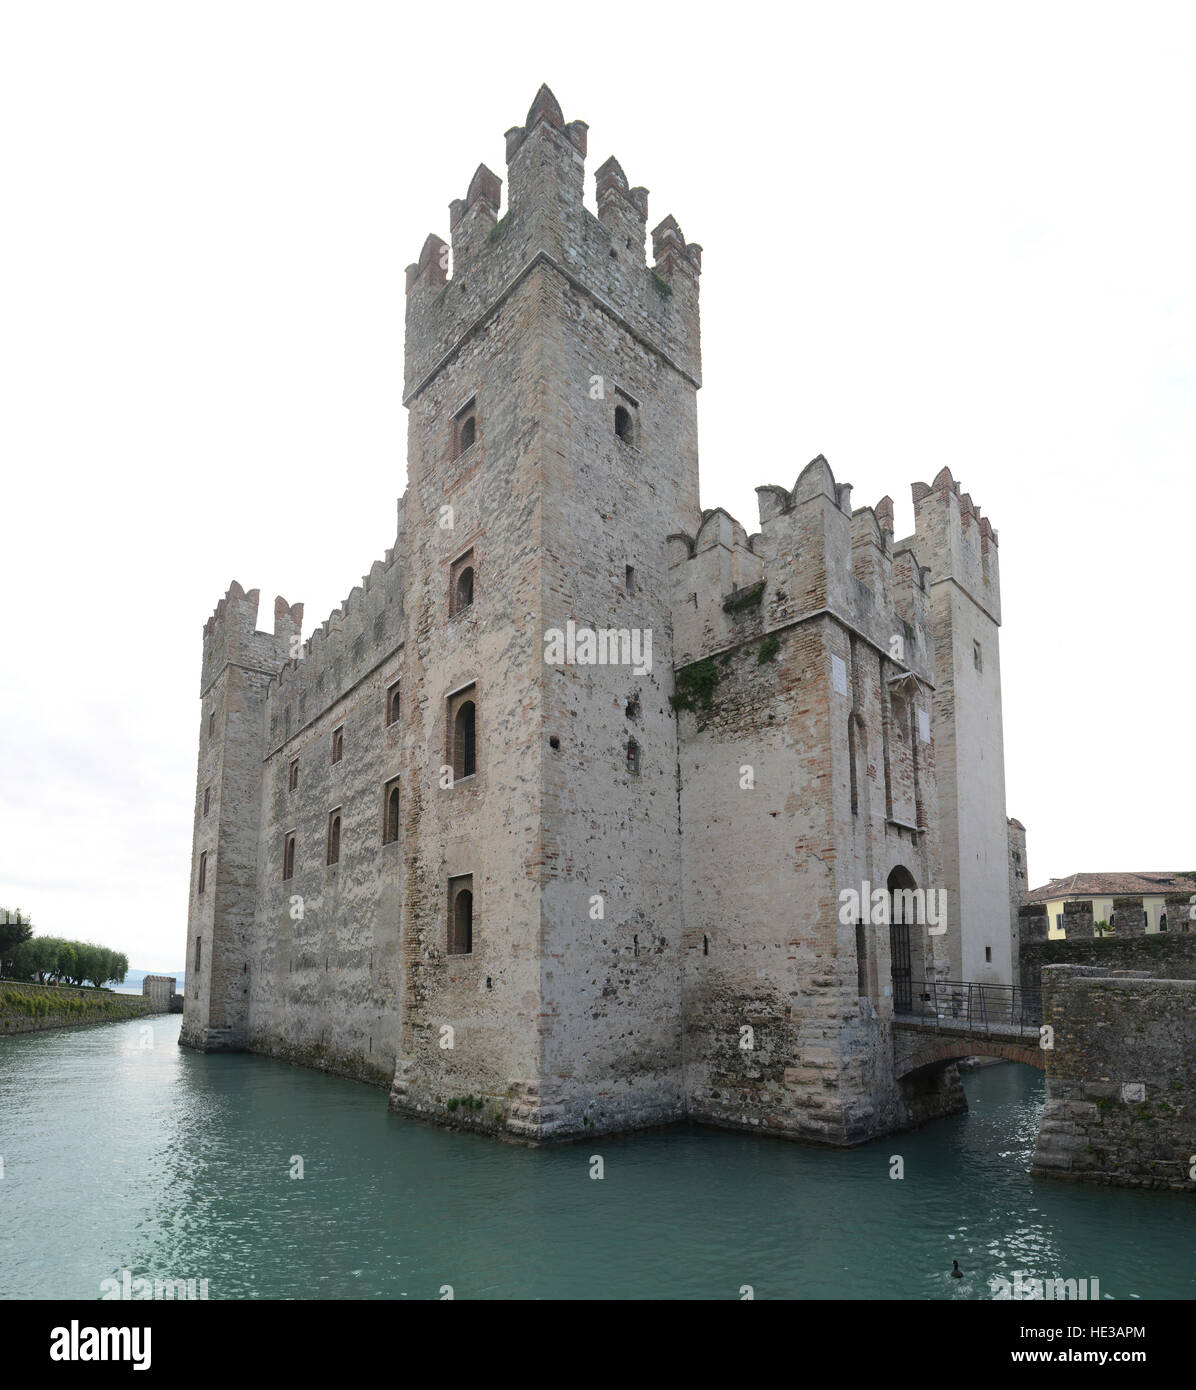 La cité médiévale Château Scaliger à Sirmione, une petite ville sur les rives du lac de Garde, Italie. Banque D'Images